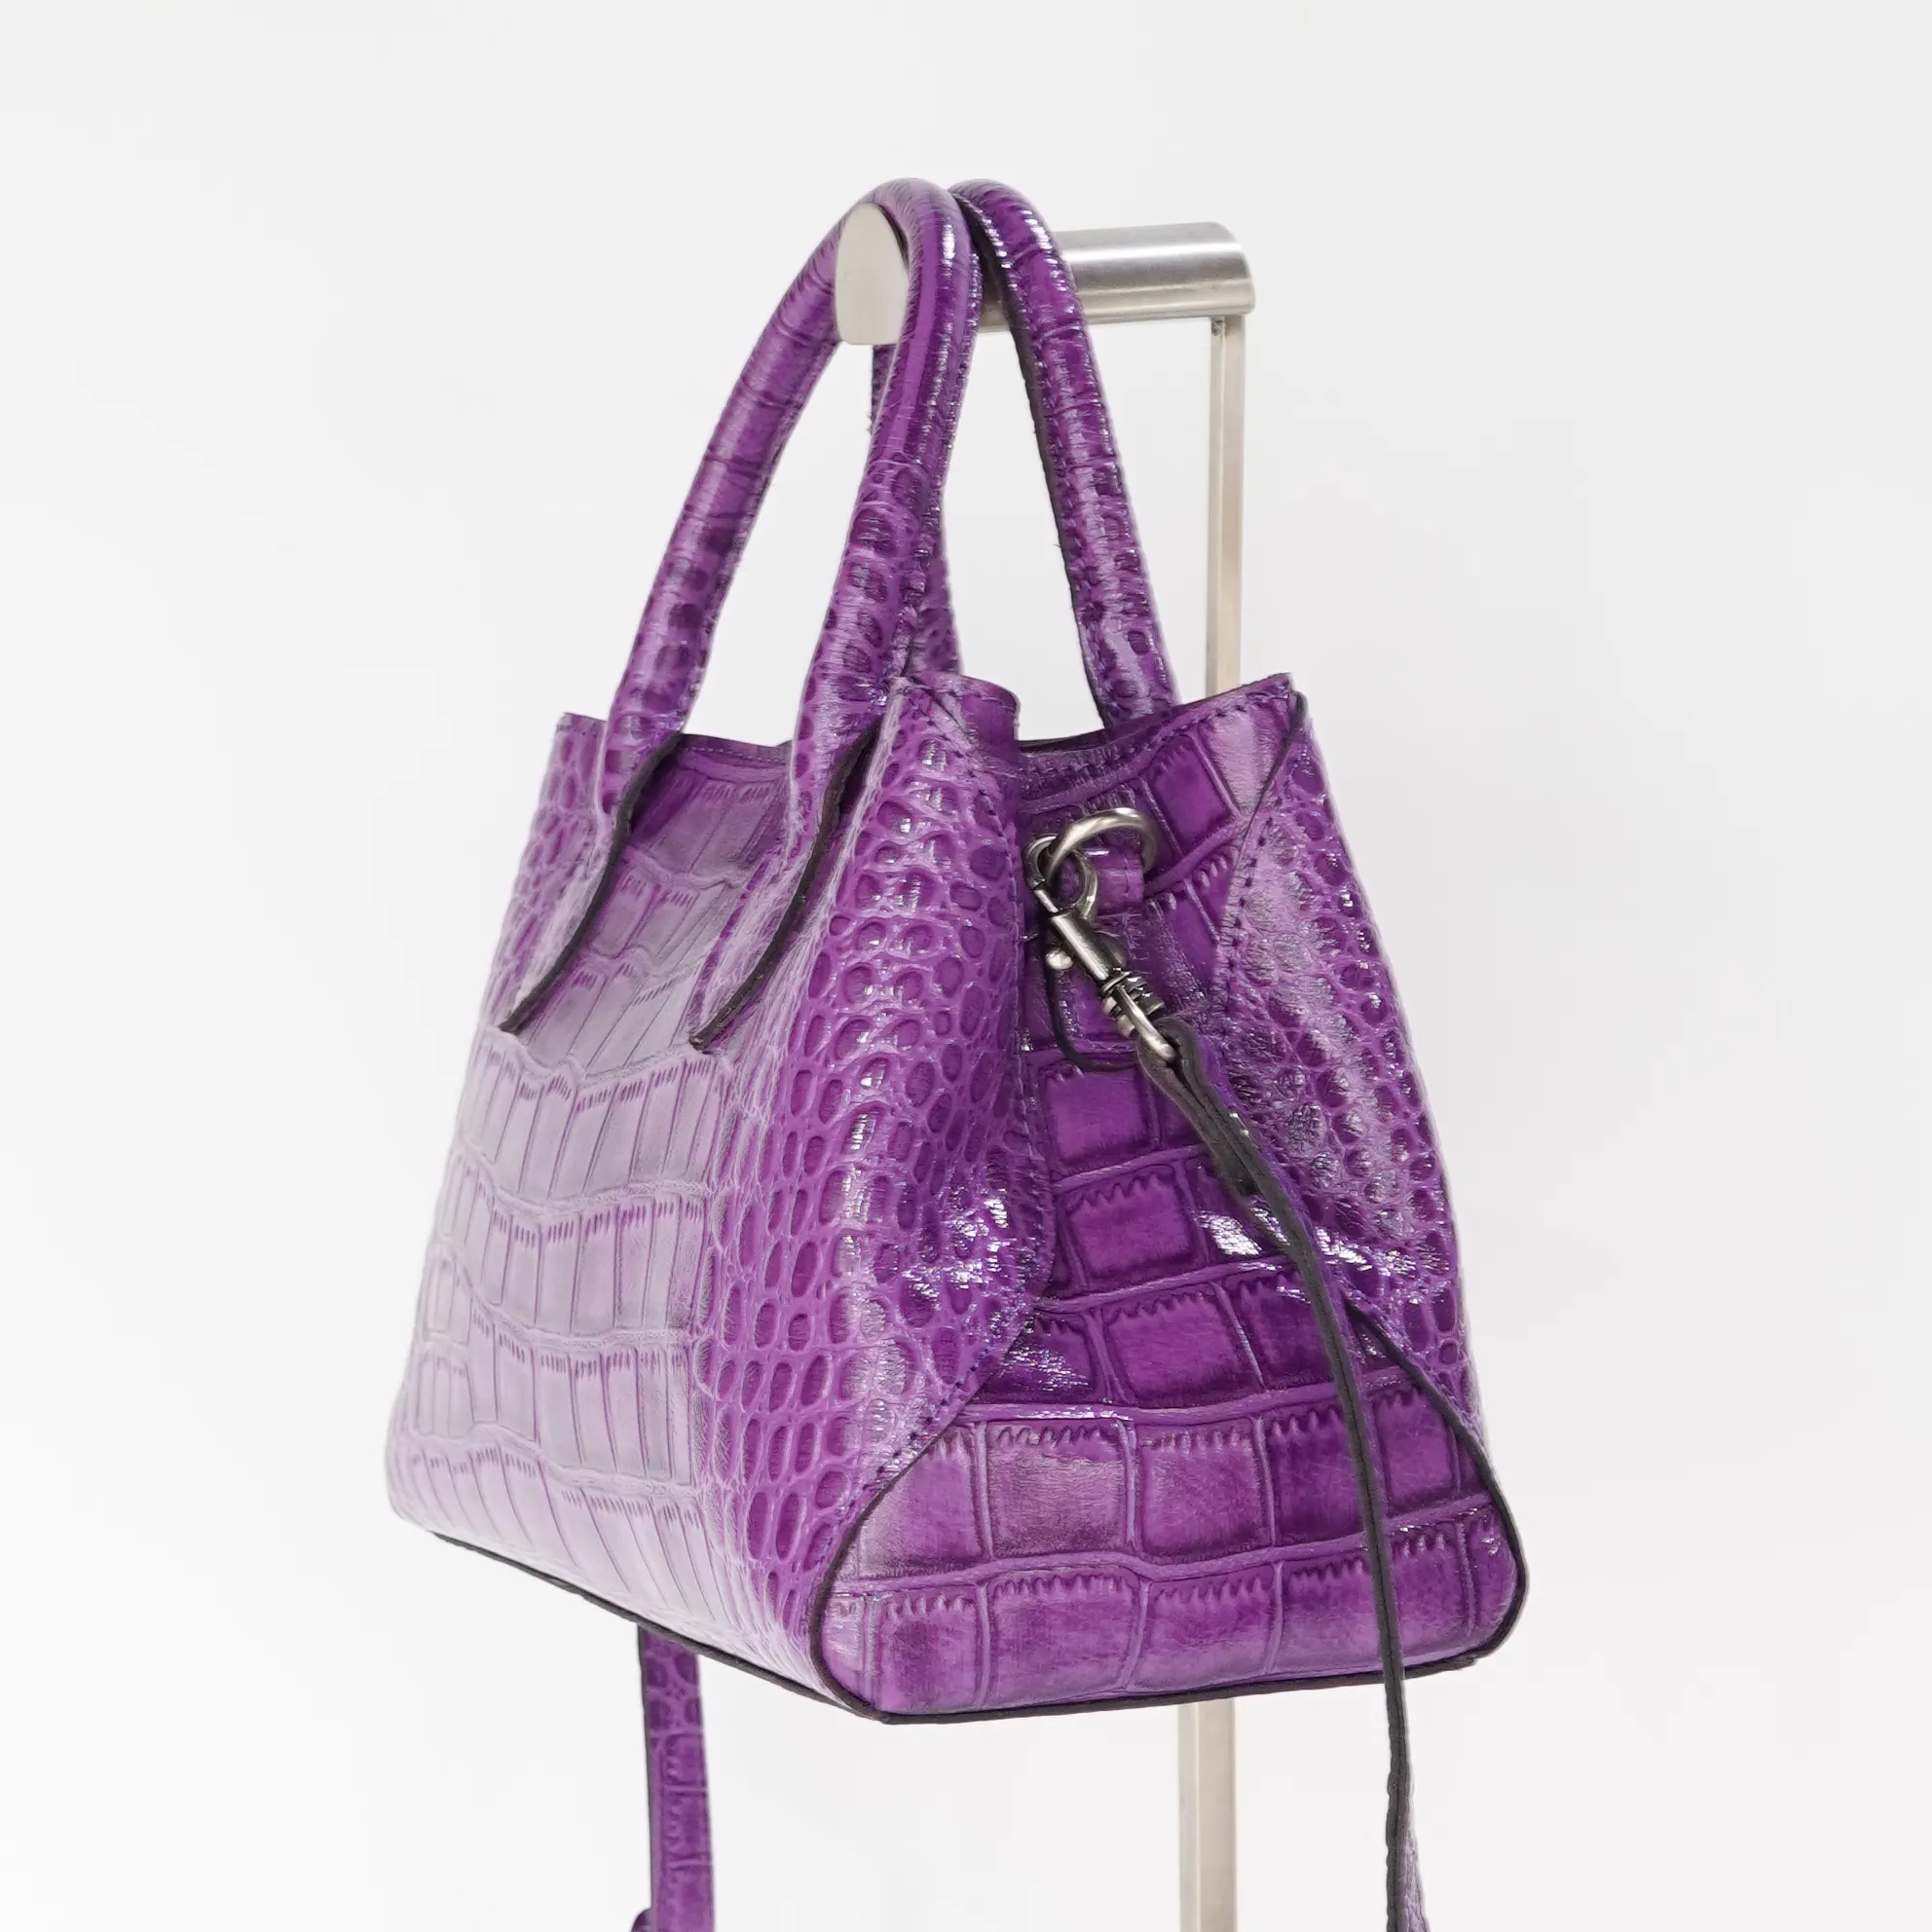 Fashion High Quality Girl Adjustable Bag Leather Red yellow purple Shoulder Handbag